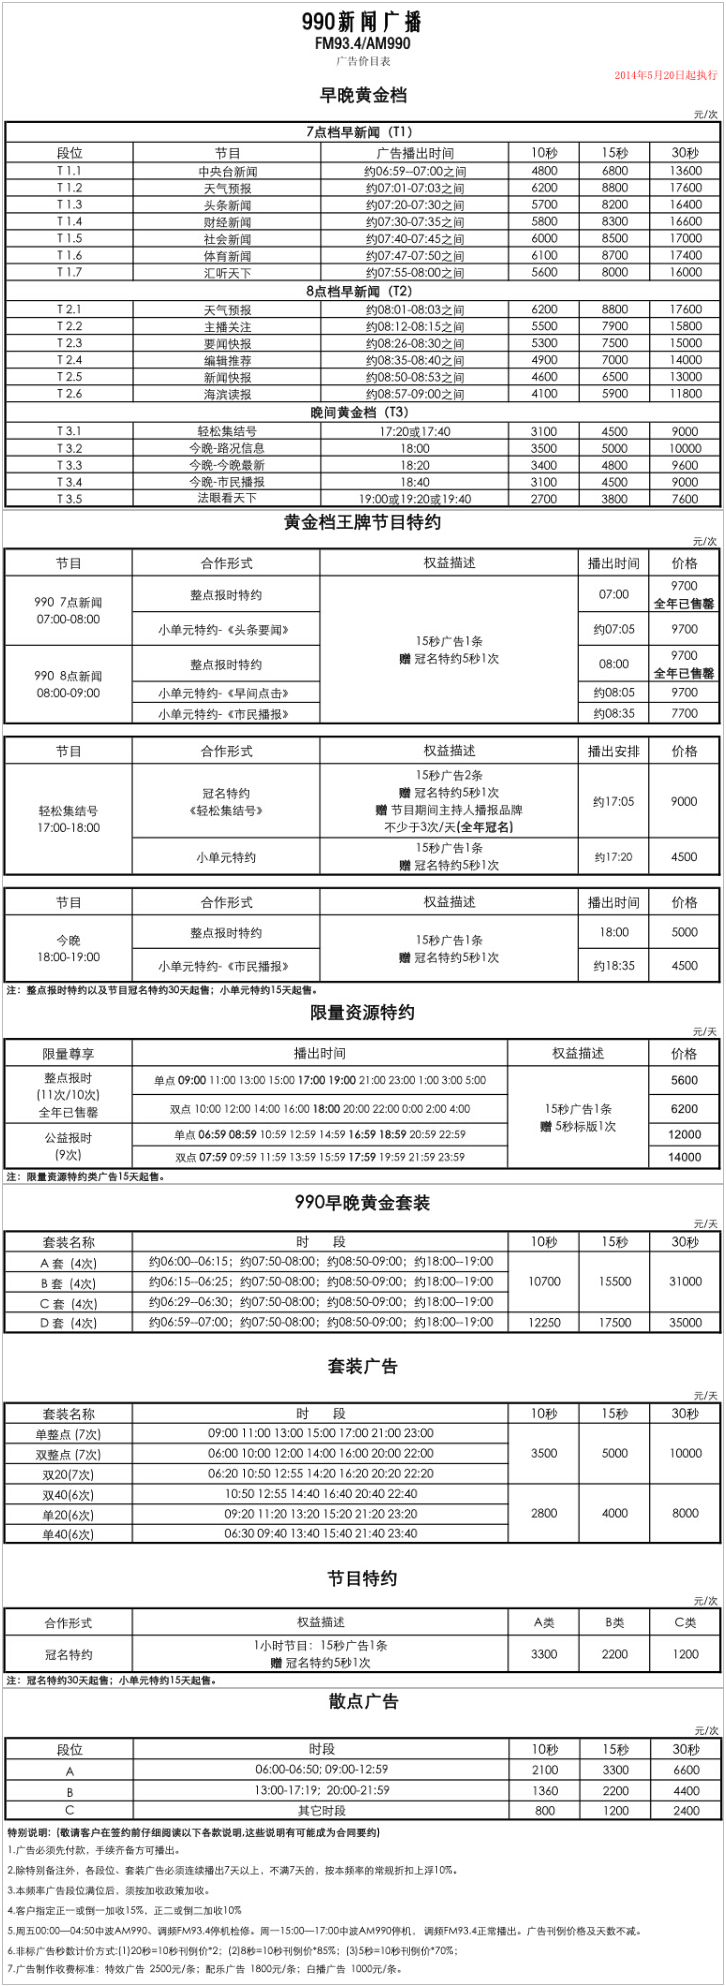 2014上海人民广播电台新闻990 AM990_FM93.4广告报价表.png